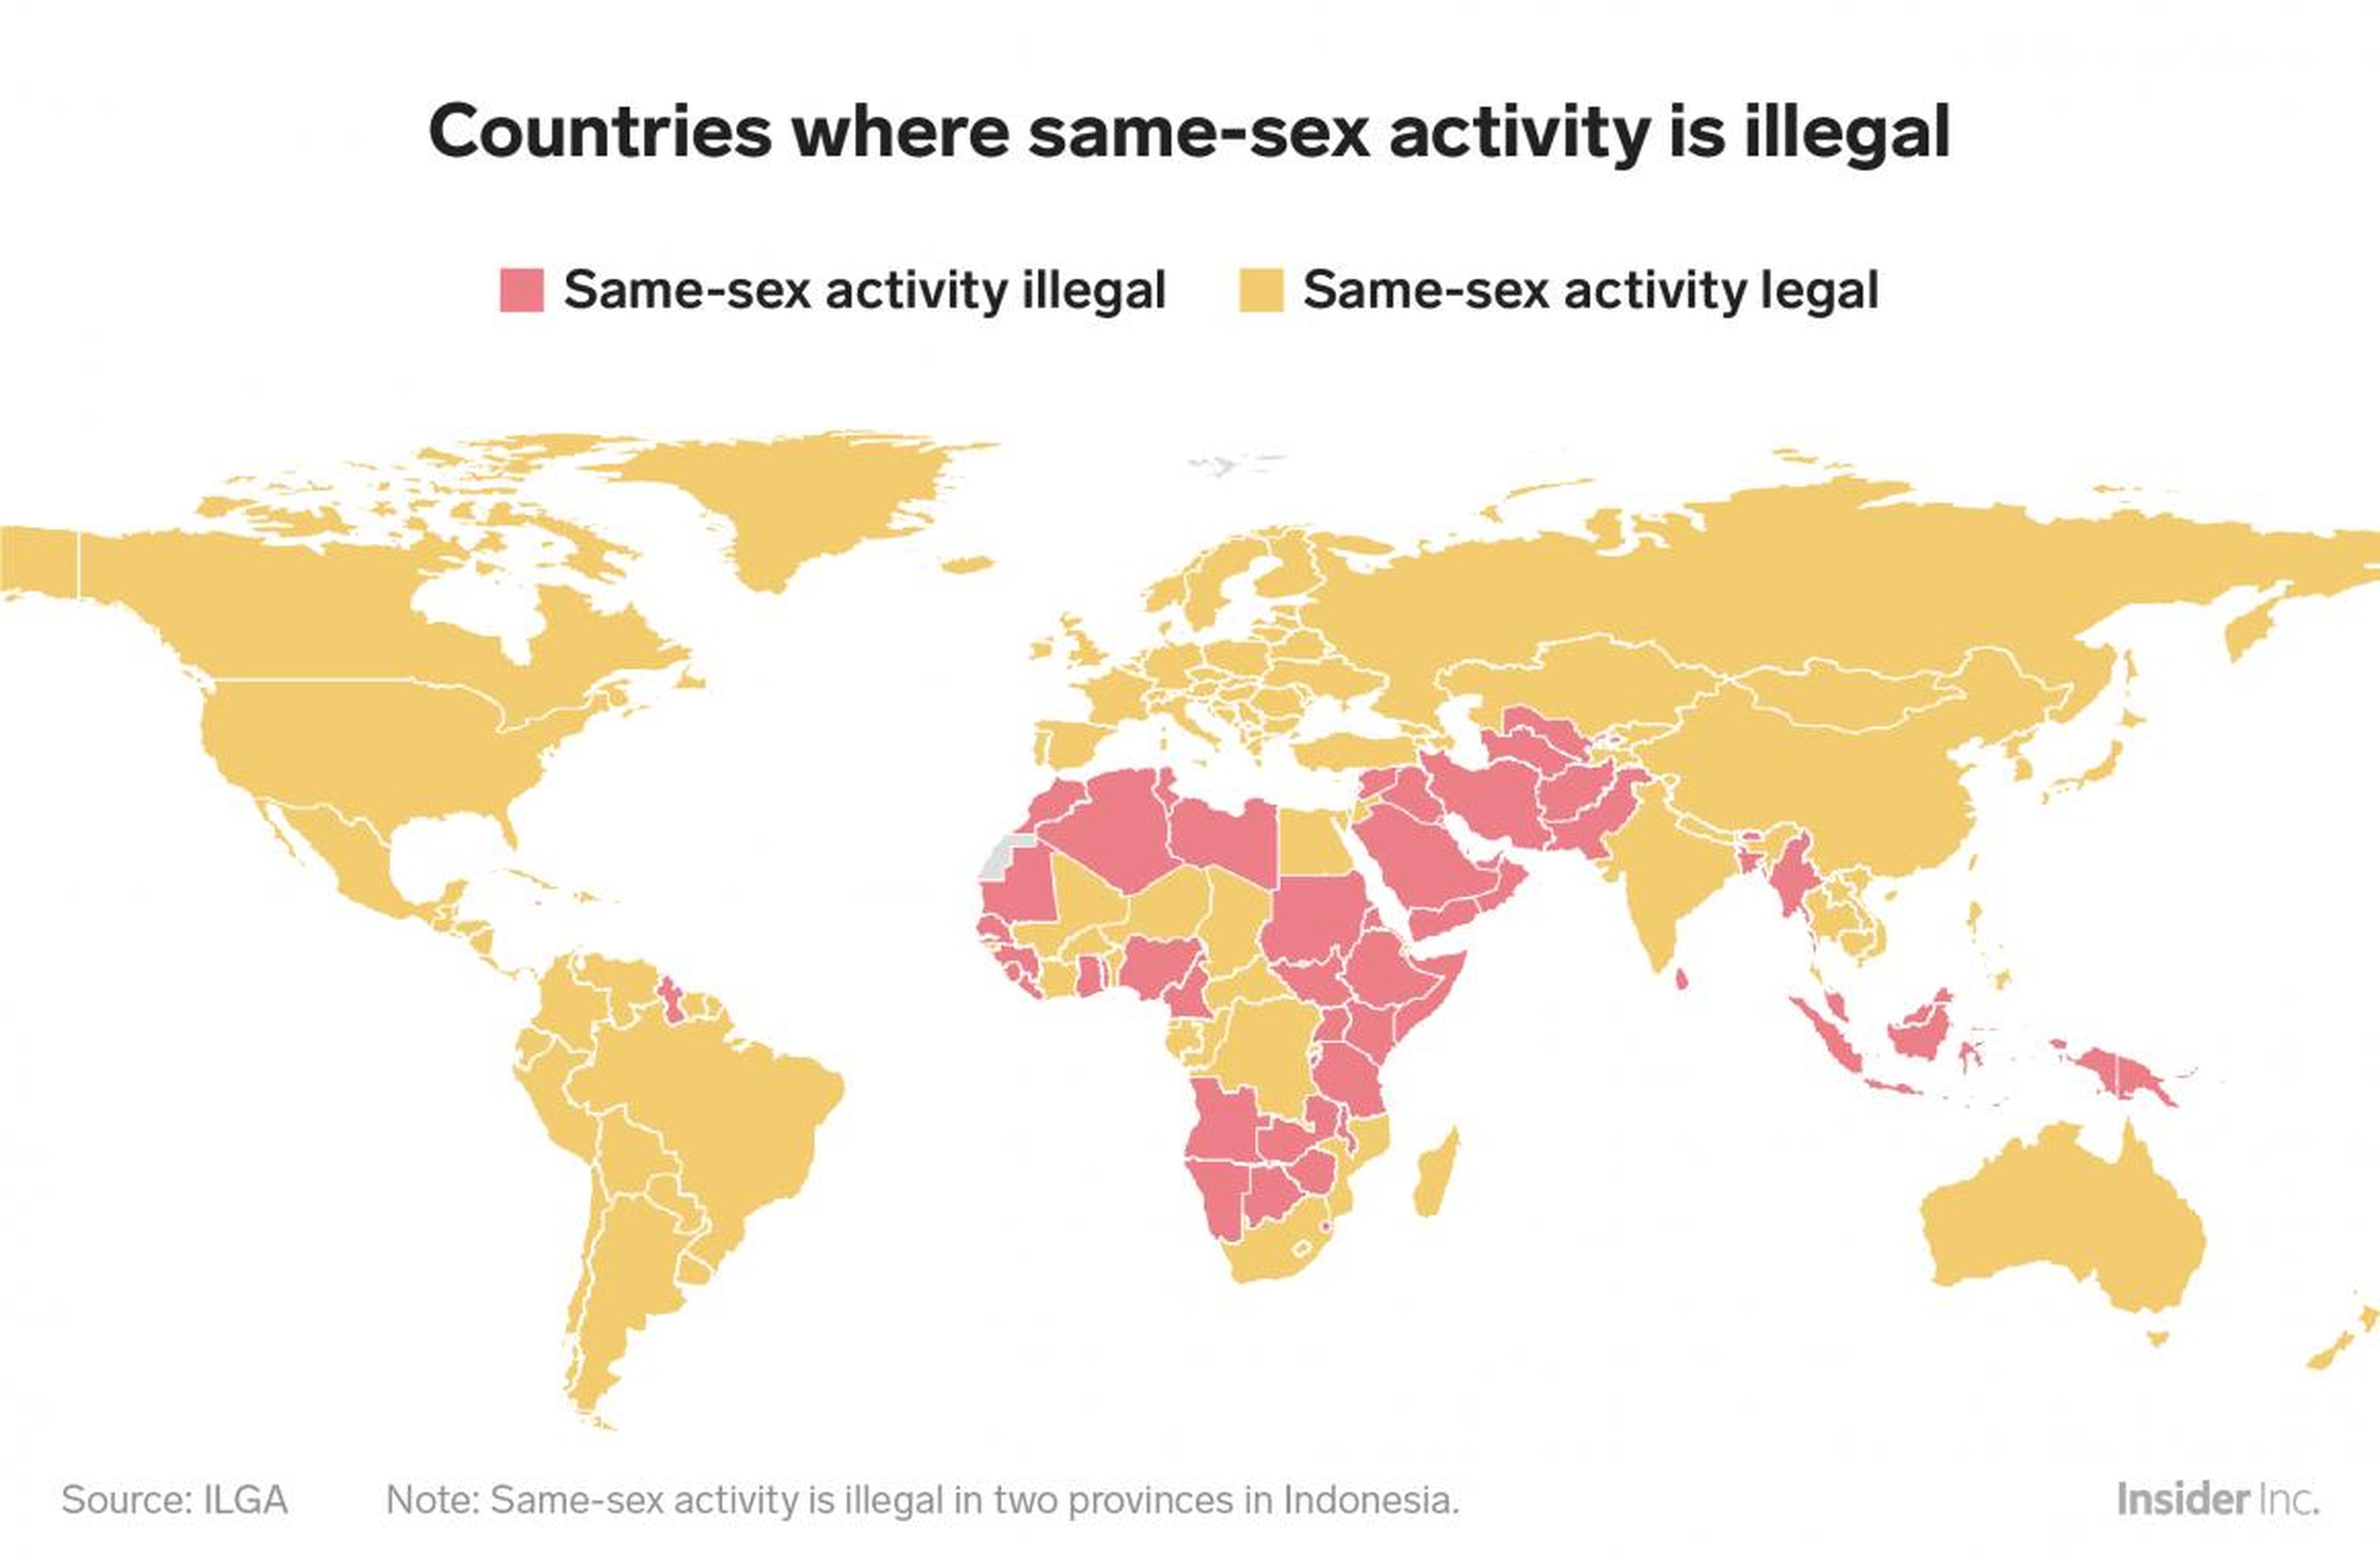 Si bien la mayoría del mundo ha legalizado la homosexualidad, los países donde todavía está prohibido están concentrados en Oriente Medio, el sudeste asiático y África, áreas con mayoría de naciones musulmanas.